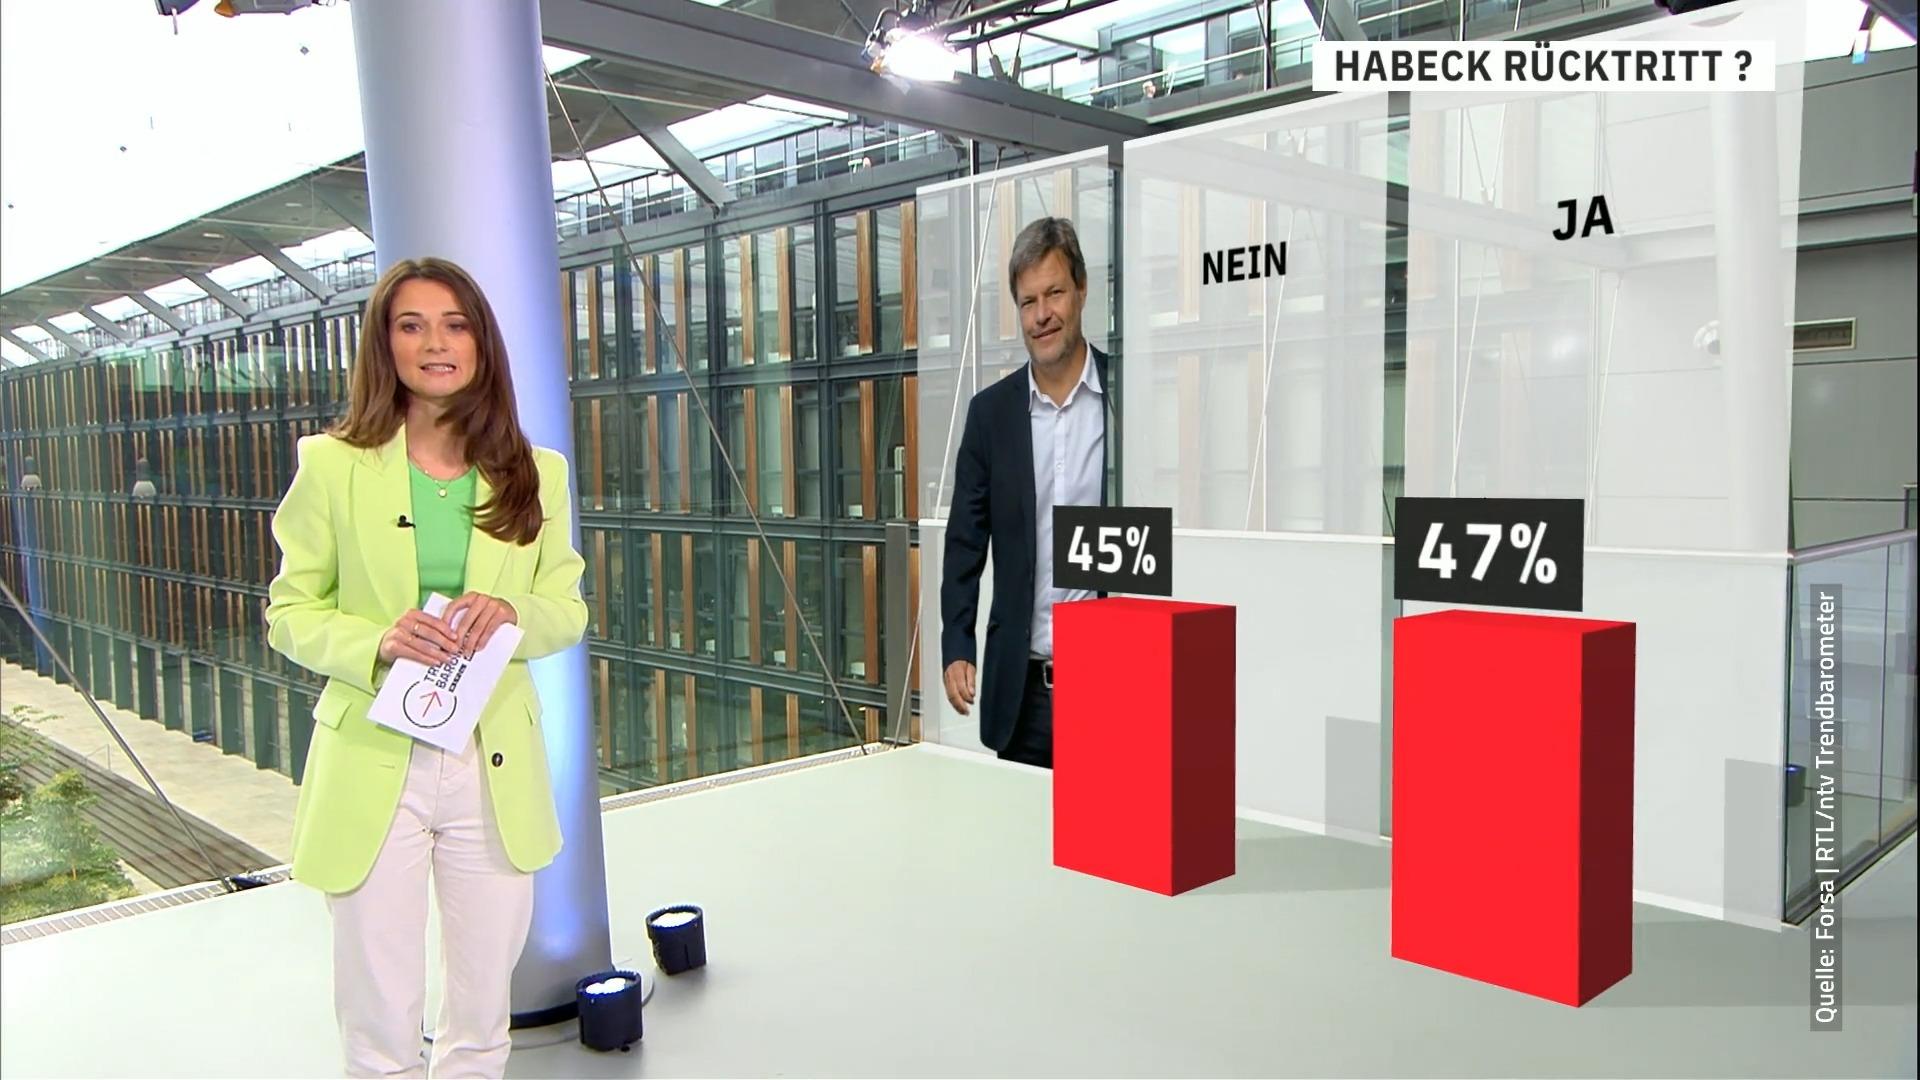 Sollte Habeck zurücktreten? RTL/ntv-Trendbarometer